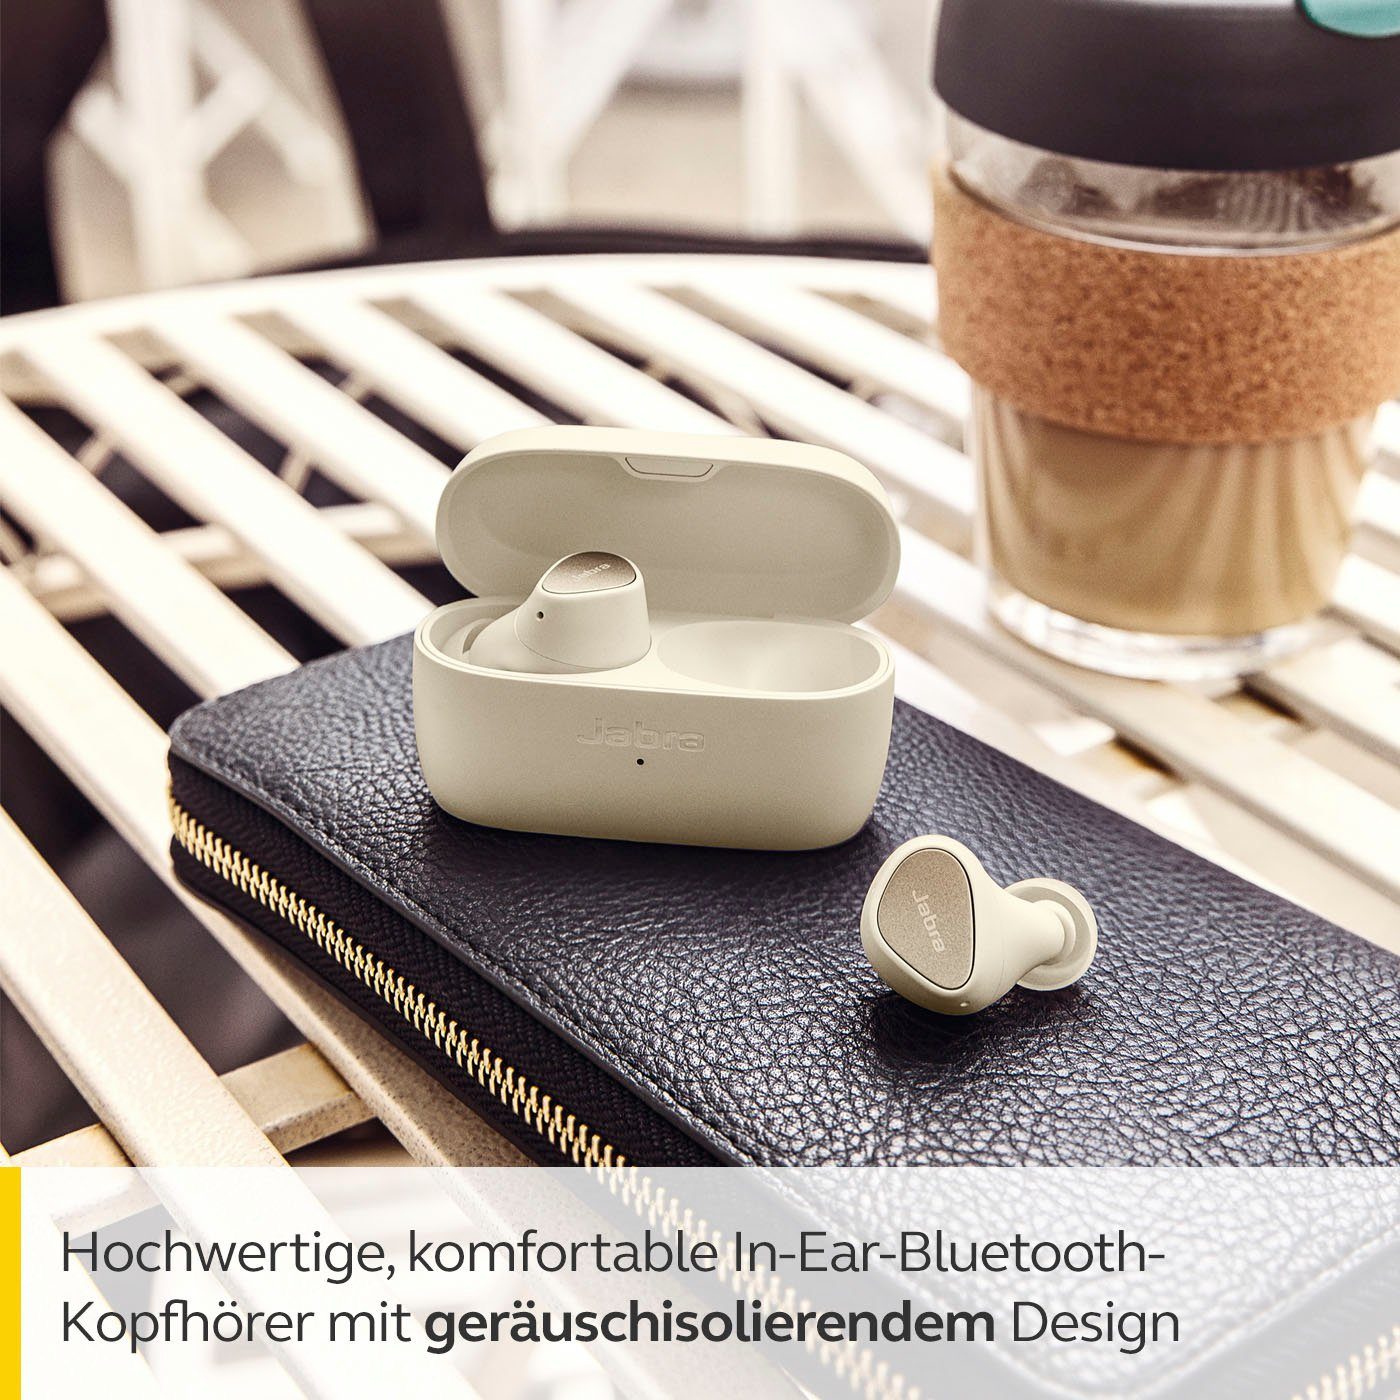 Jabra Elite (Geräuschisolierung, Siri, 3 In-Ear-Kopfhörer Bluetooth) gold-beige Google Assistant, Alexa